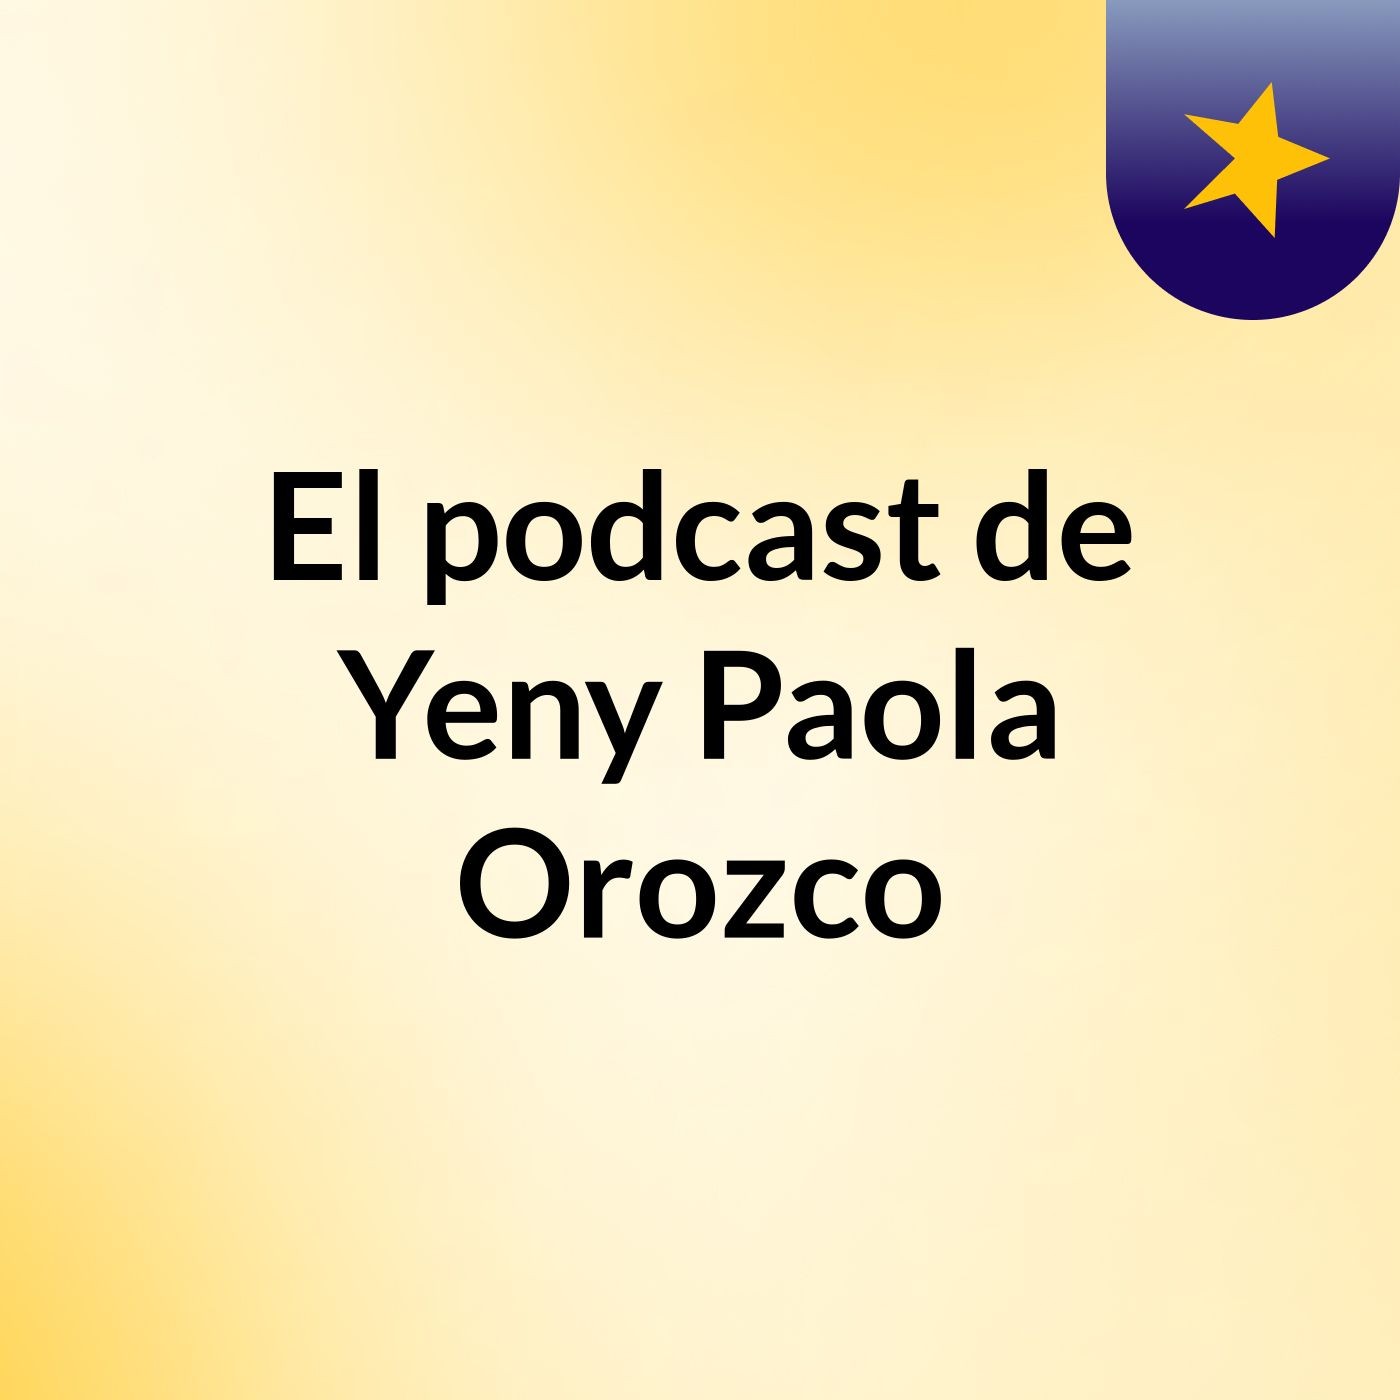 El podcast de Yeny Paola Orozco